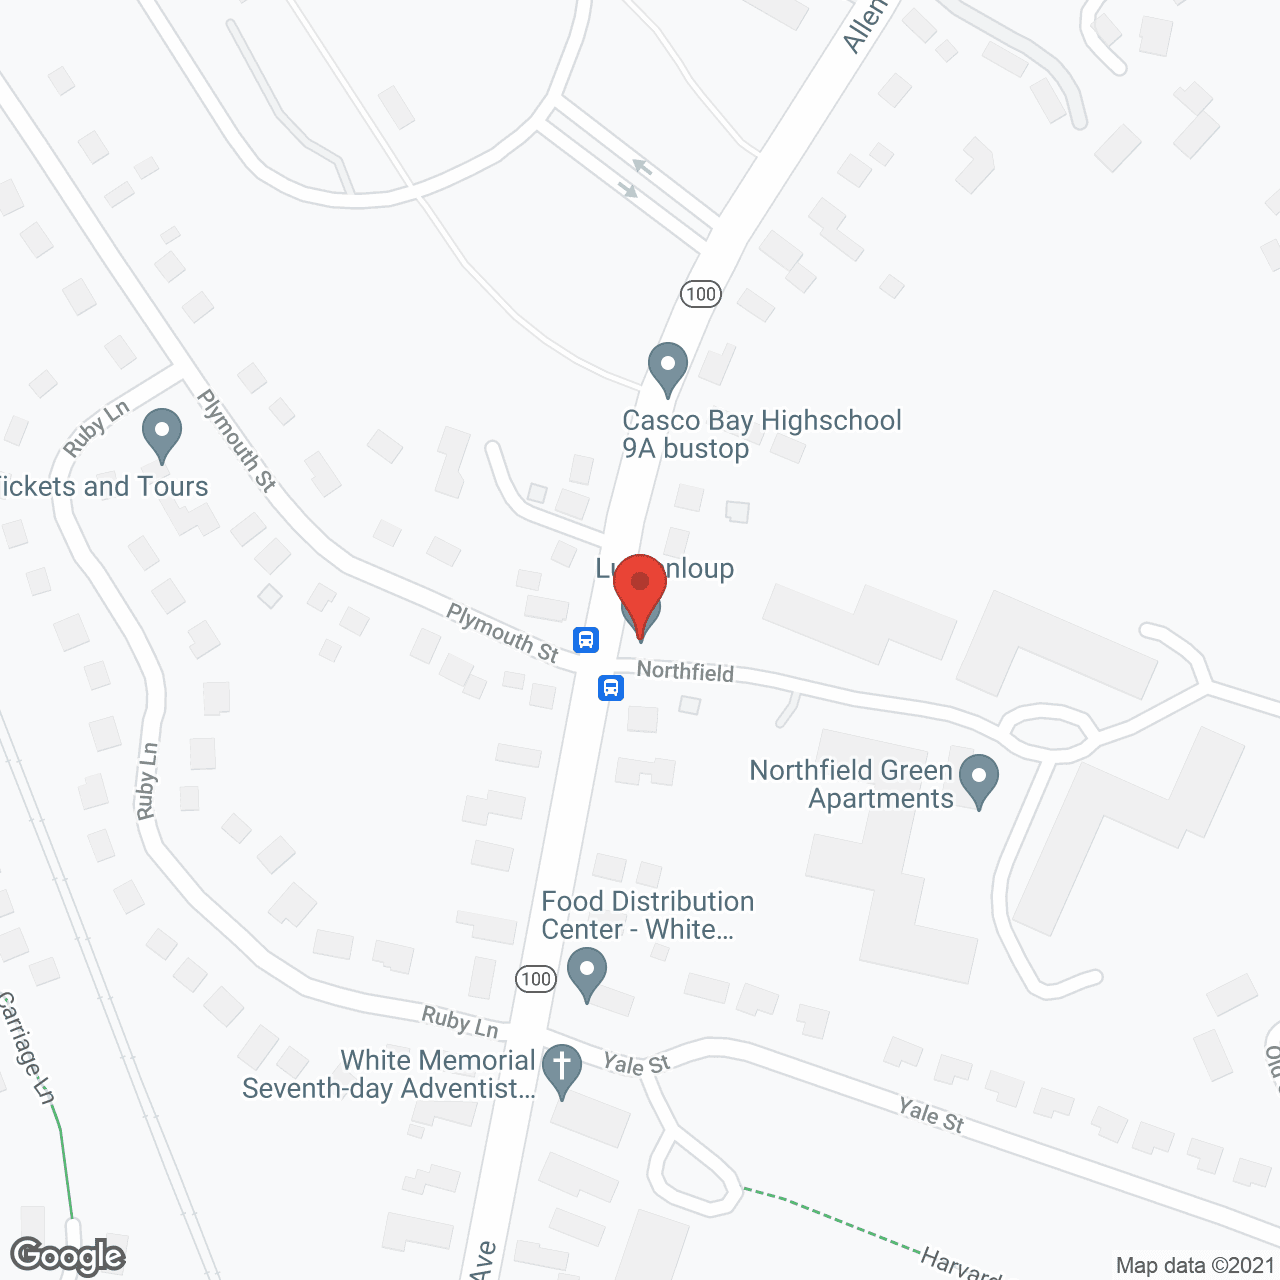 Northfield Green in google map